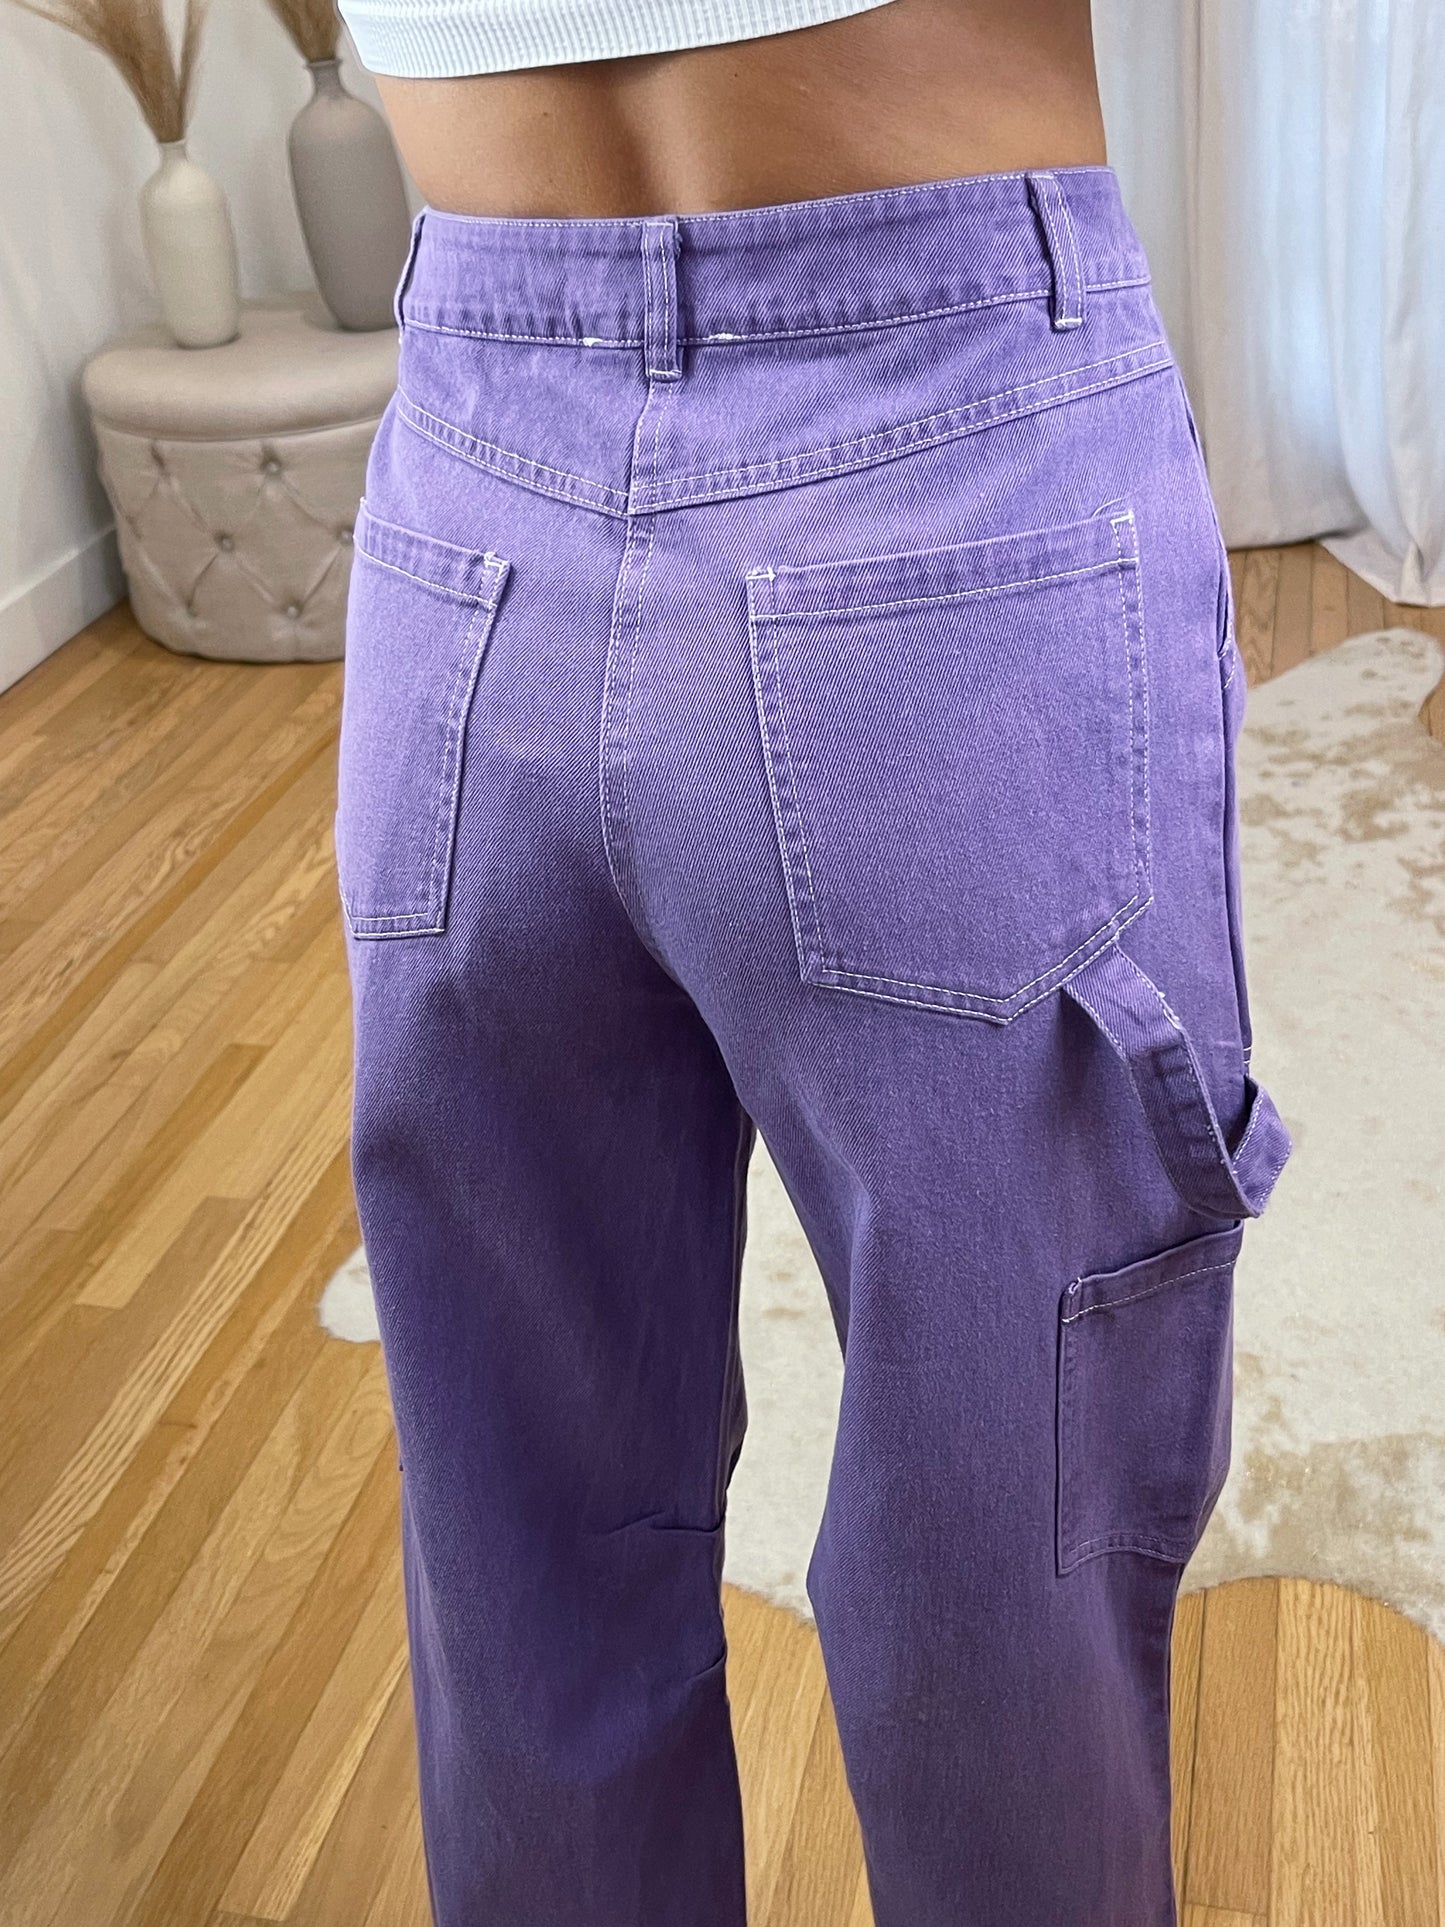 Grape Juice Cargo Pants